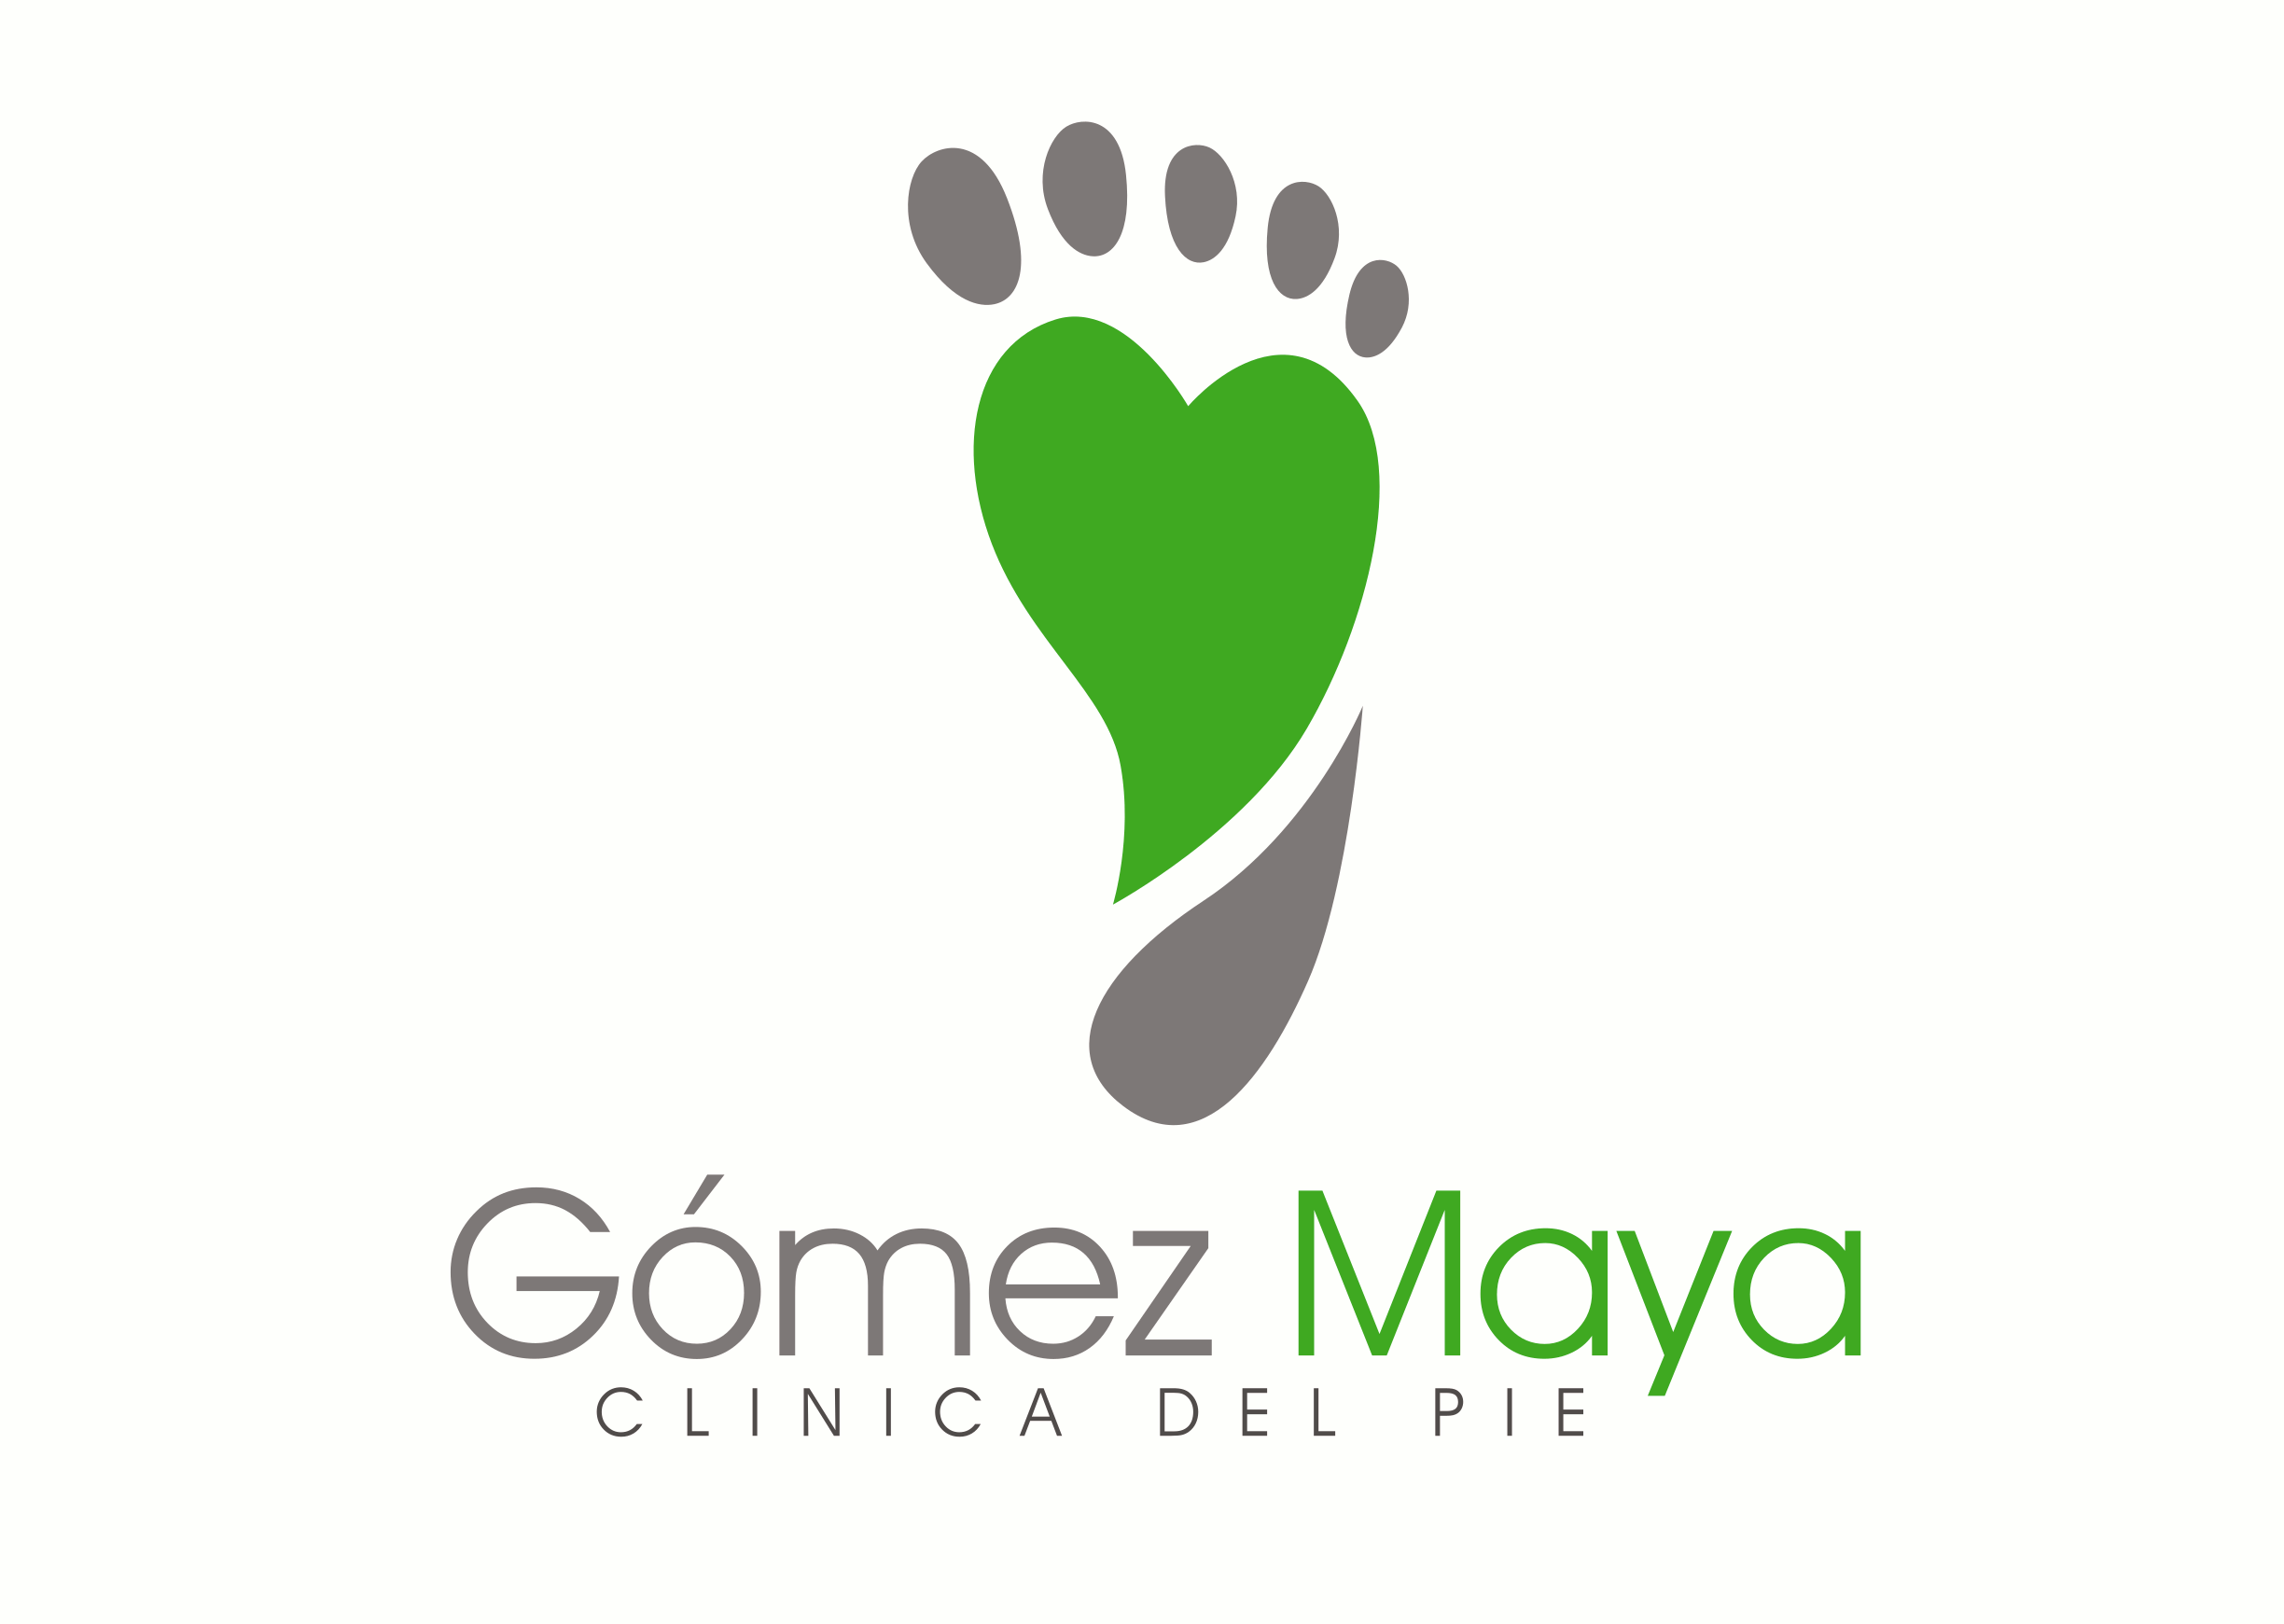 Clínica del pie Gómez Maya - CPSalud